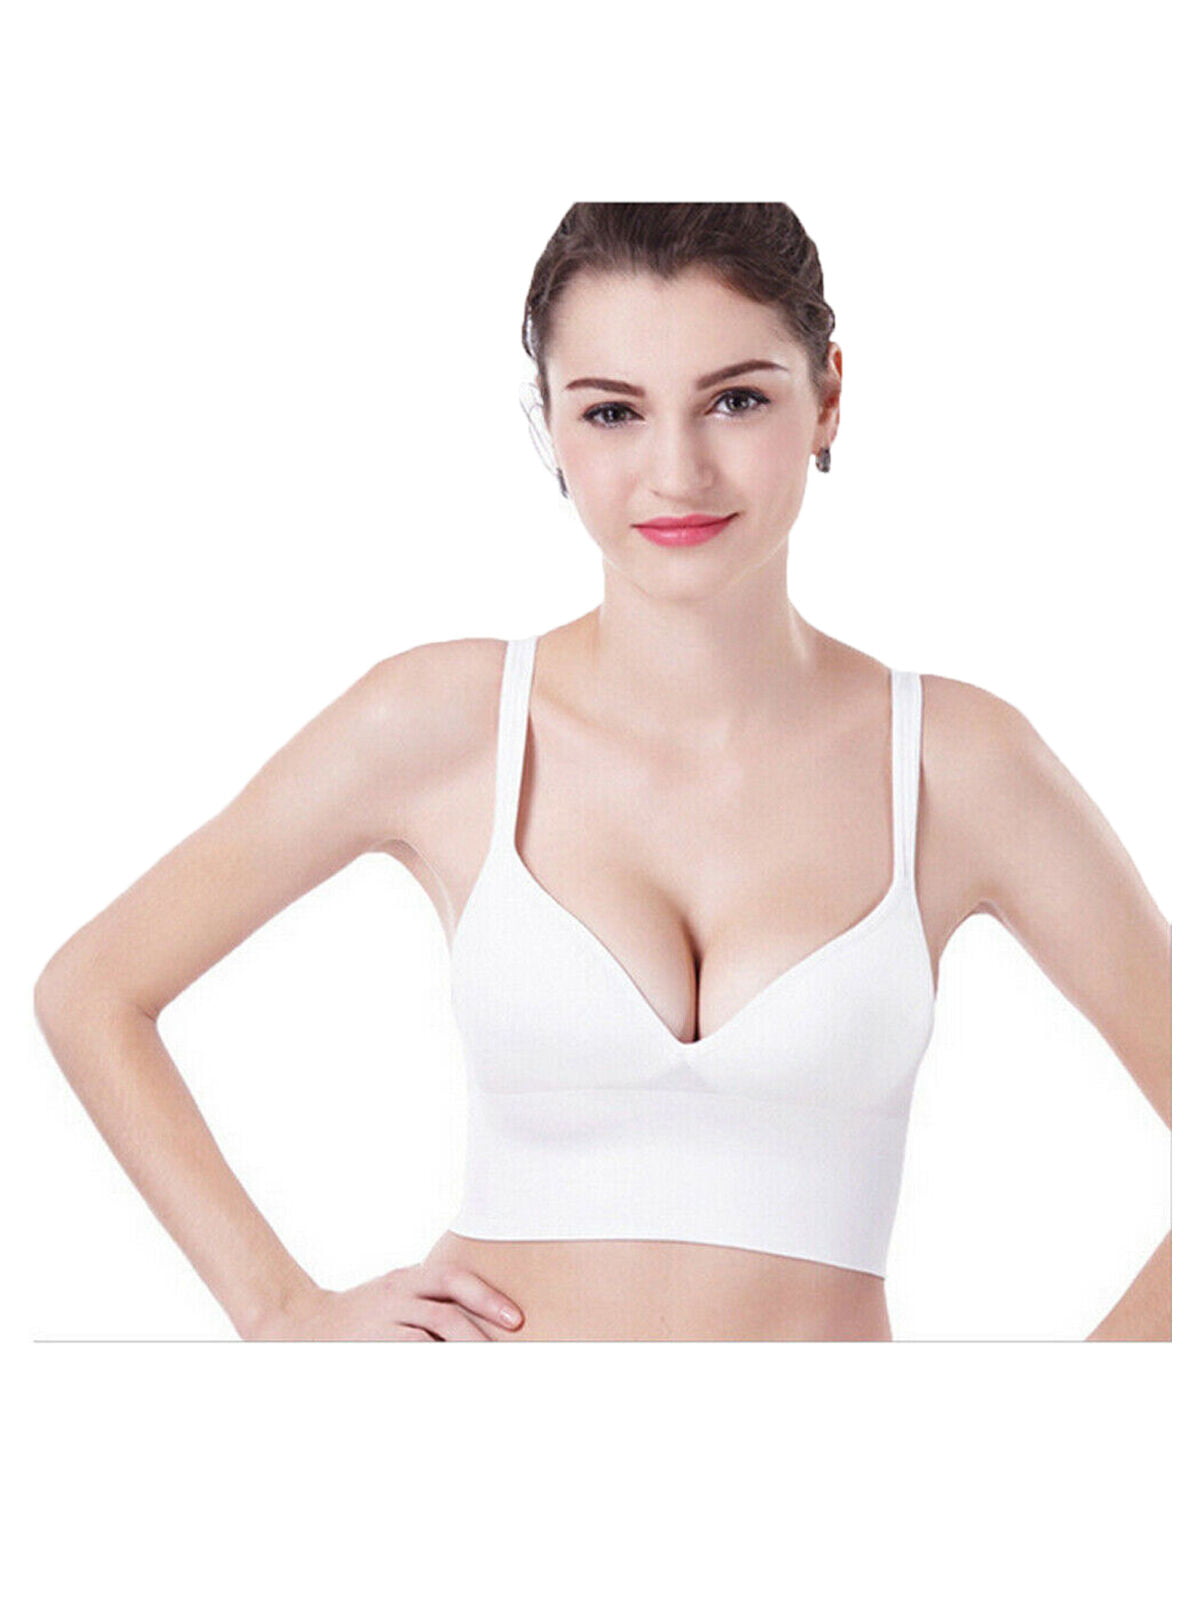 Women Summer Transparent Bra Top Bralette Push Up Underwire Brassiere Underwear 